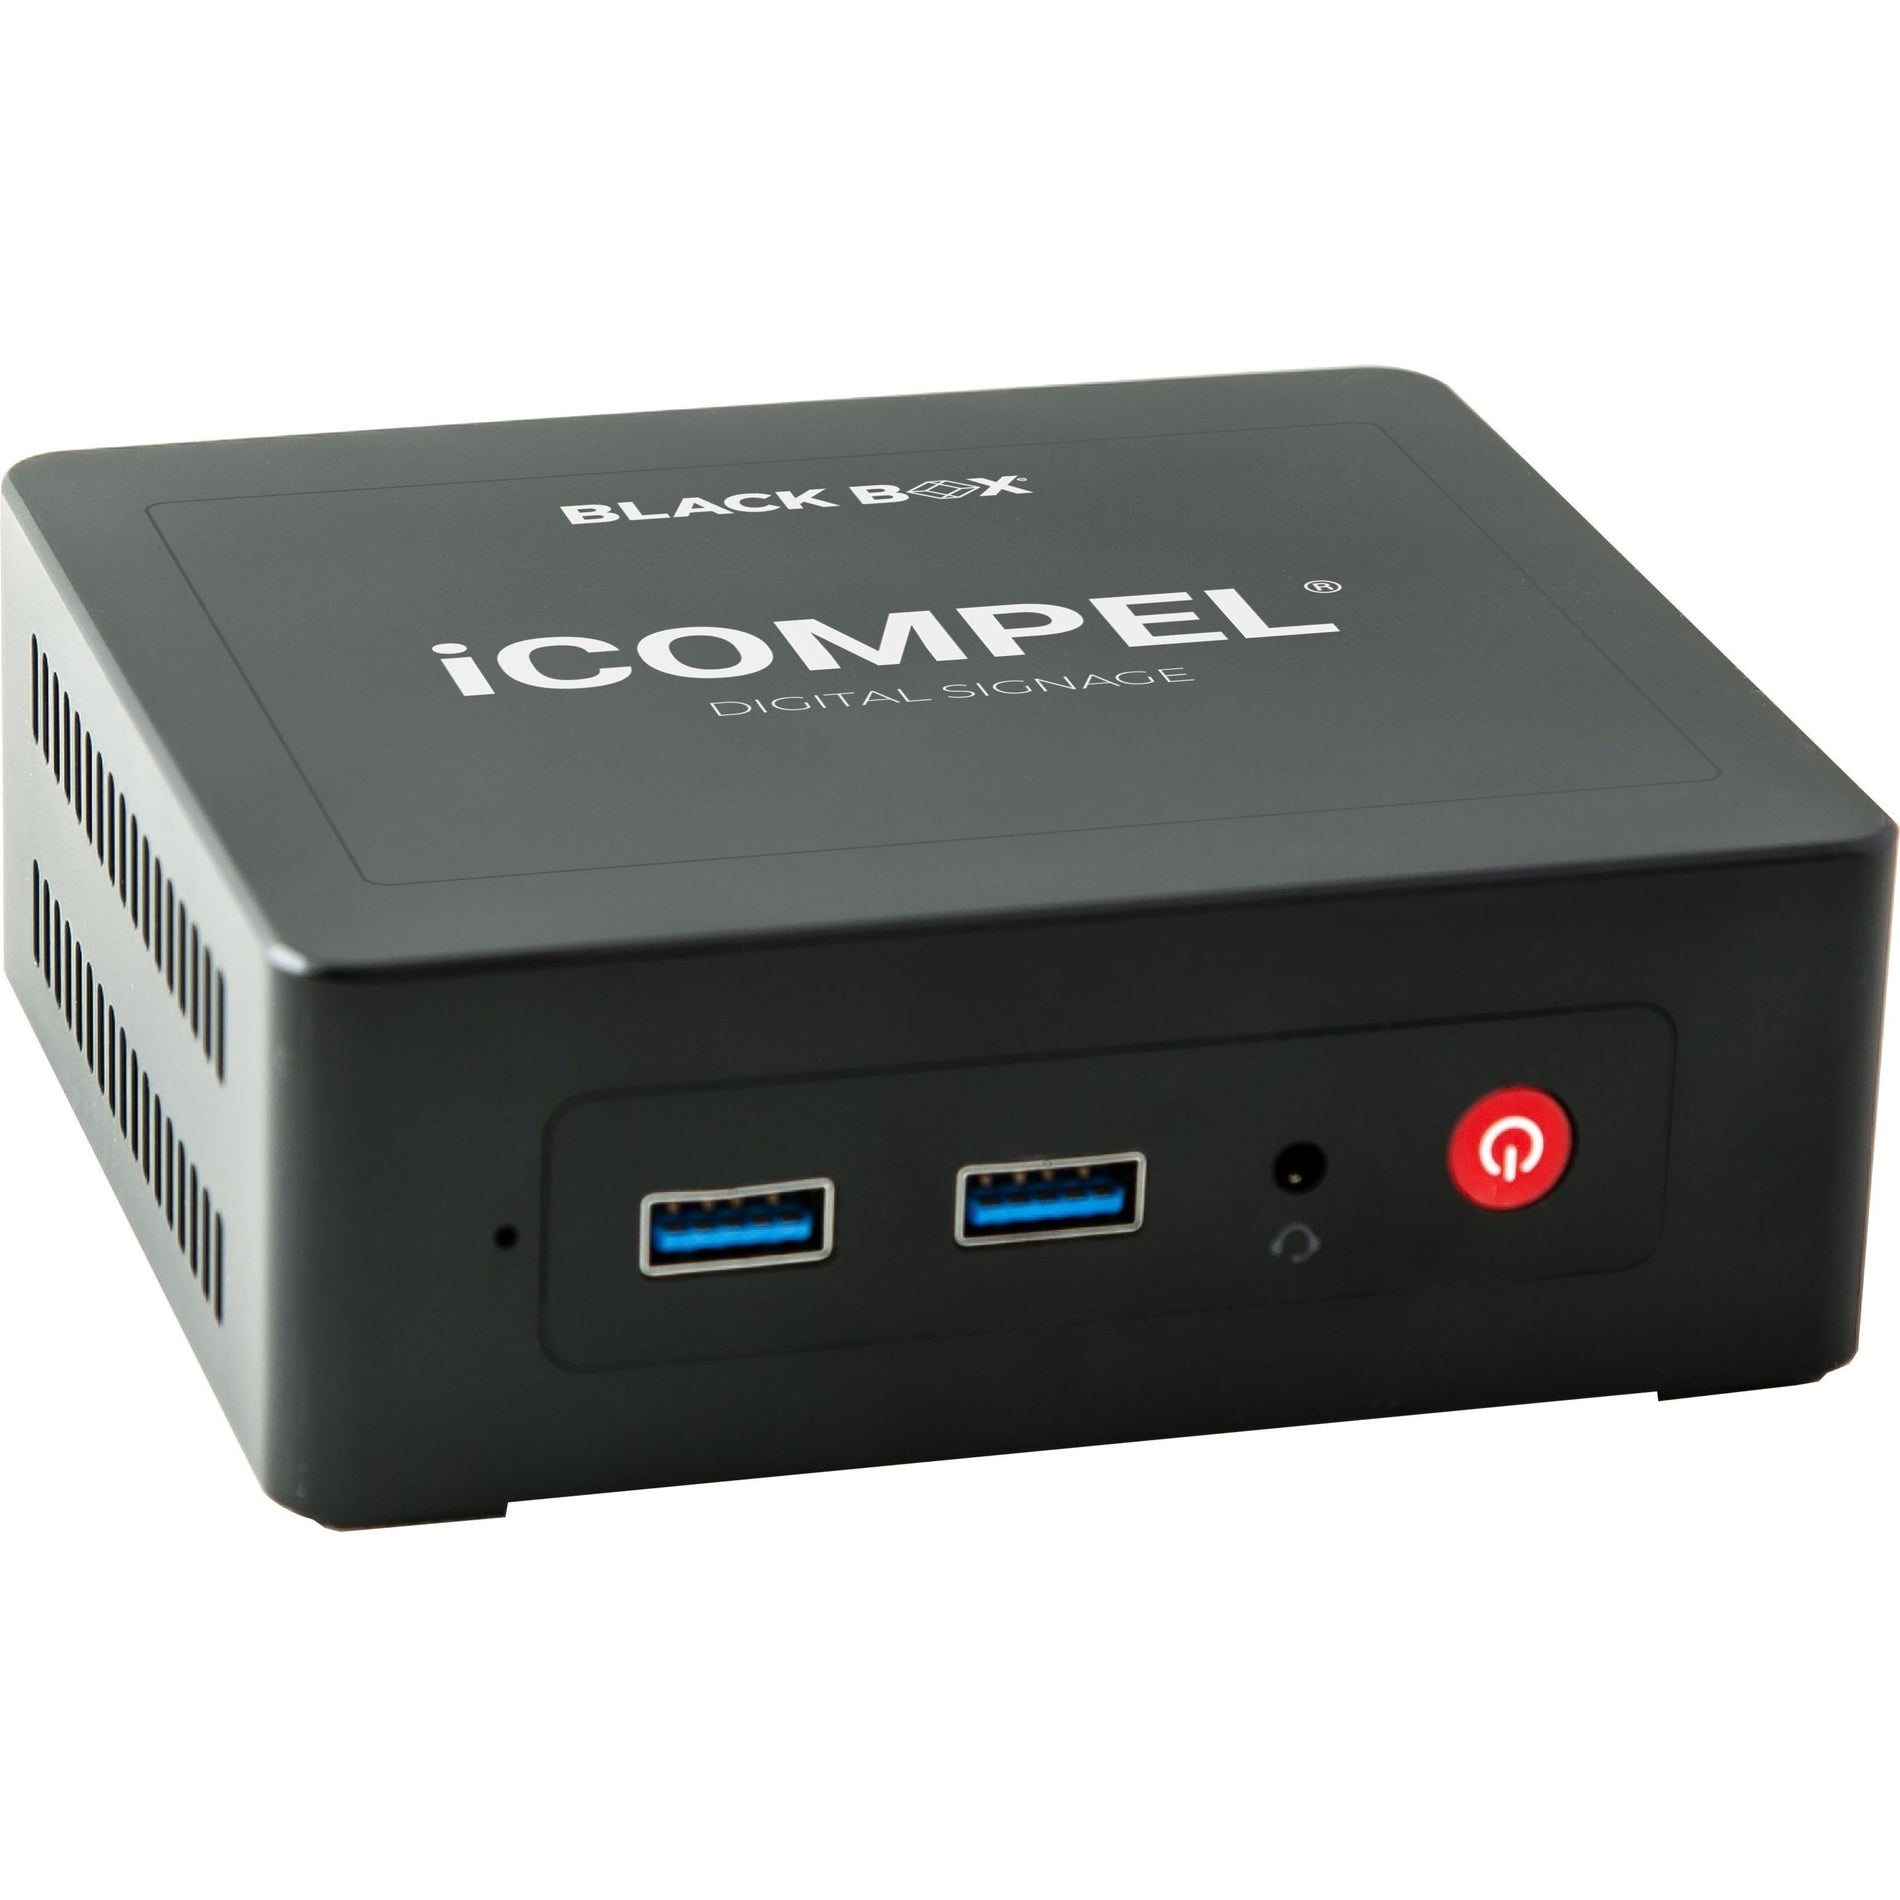 Black Box ICVS-VL-SU-N-R3 iCompel Digital Signage Full HD Media Player, 1080p, 128GB SSD, 1 Year Warranty